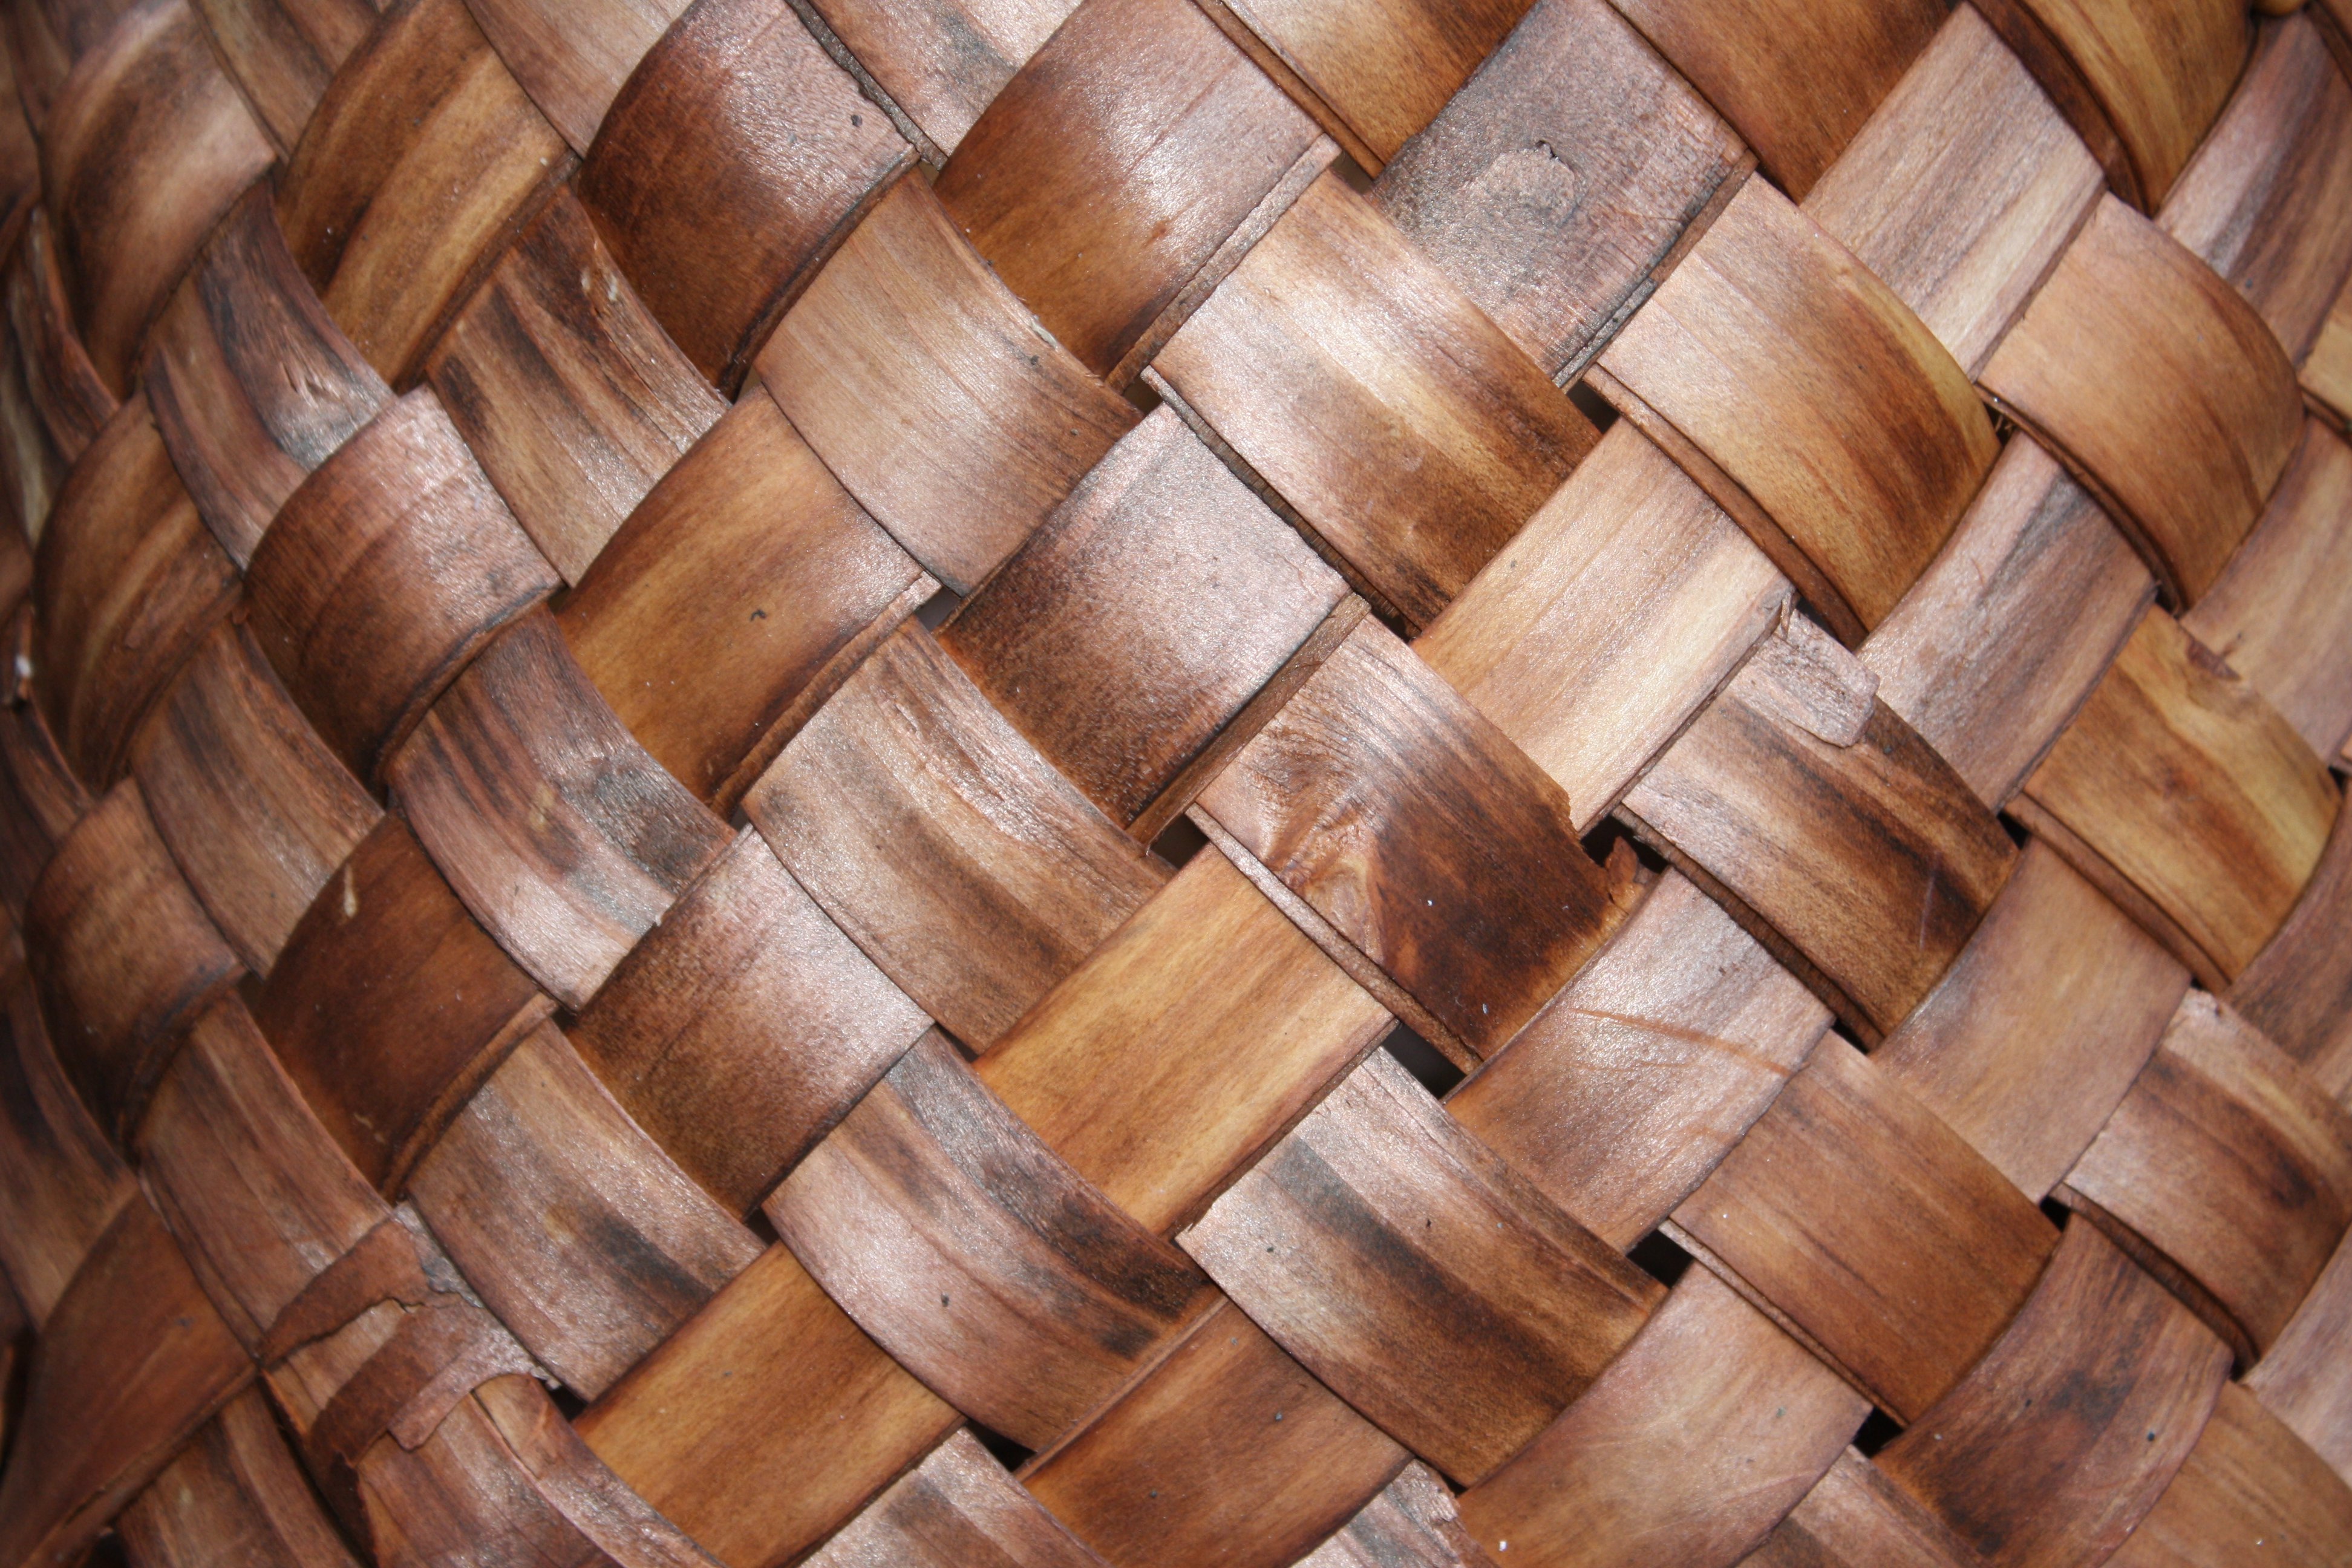 Woven Basket Texture Picture | Free Photograph | Photos Public Domain